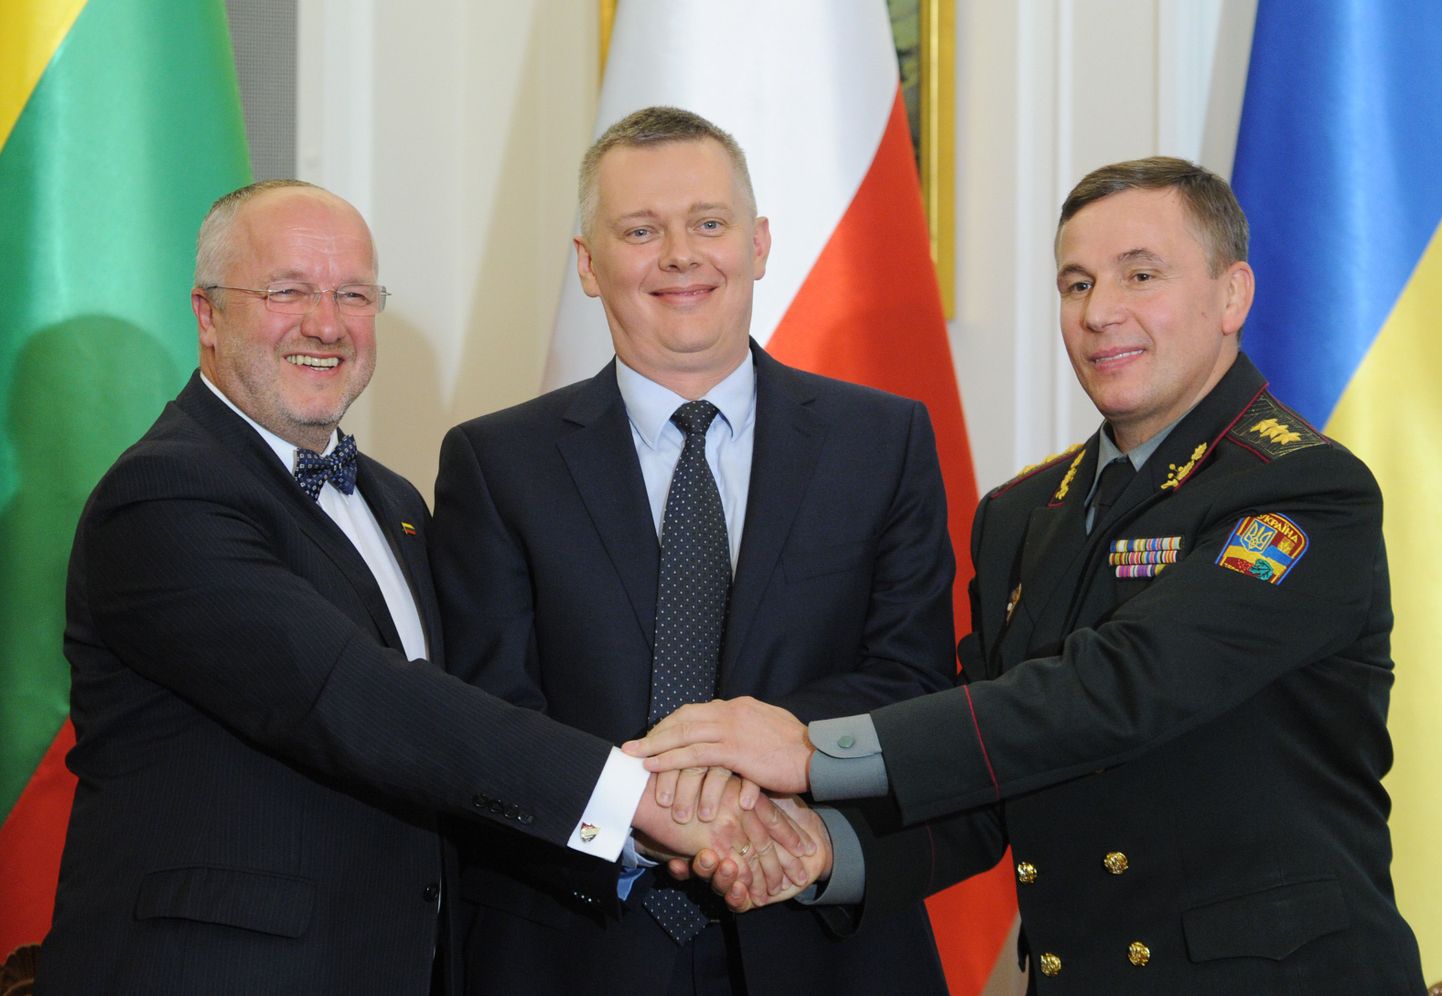 Leedu kaitseminister Juozas Olekas (vasakult), Poola kaitseminister Tomasz Siemoniak ja Ukraina kaitseminister Valeri Heletei.